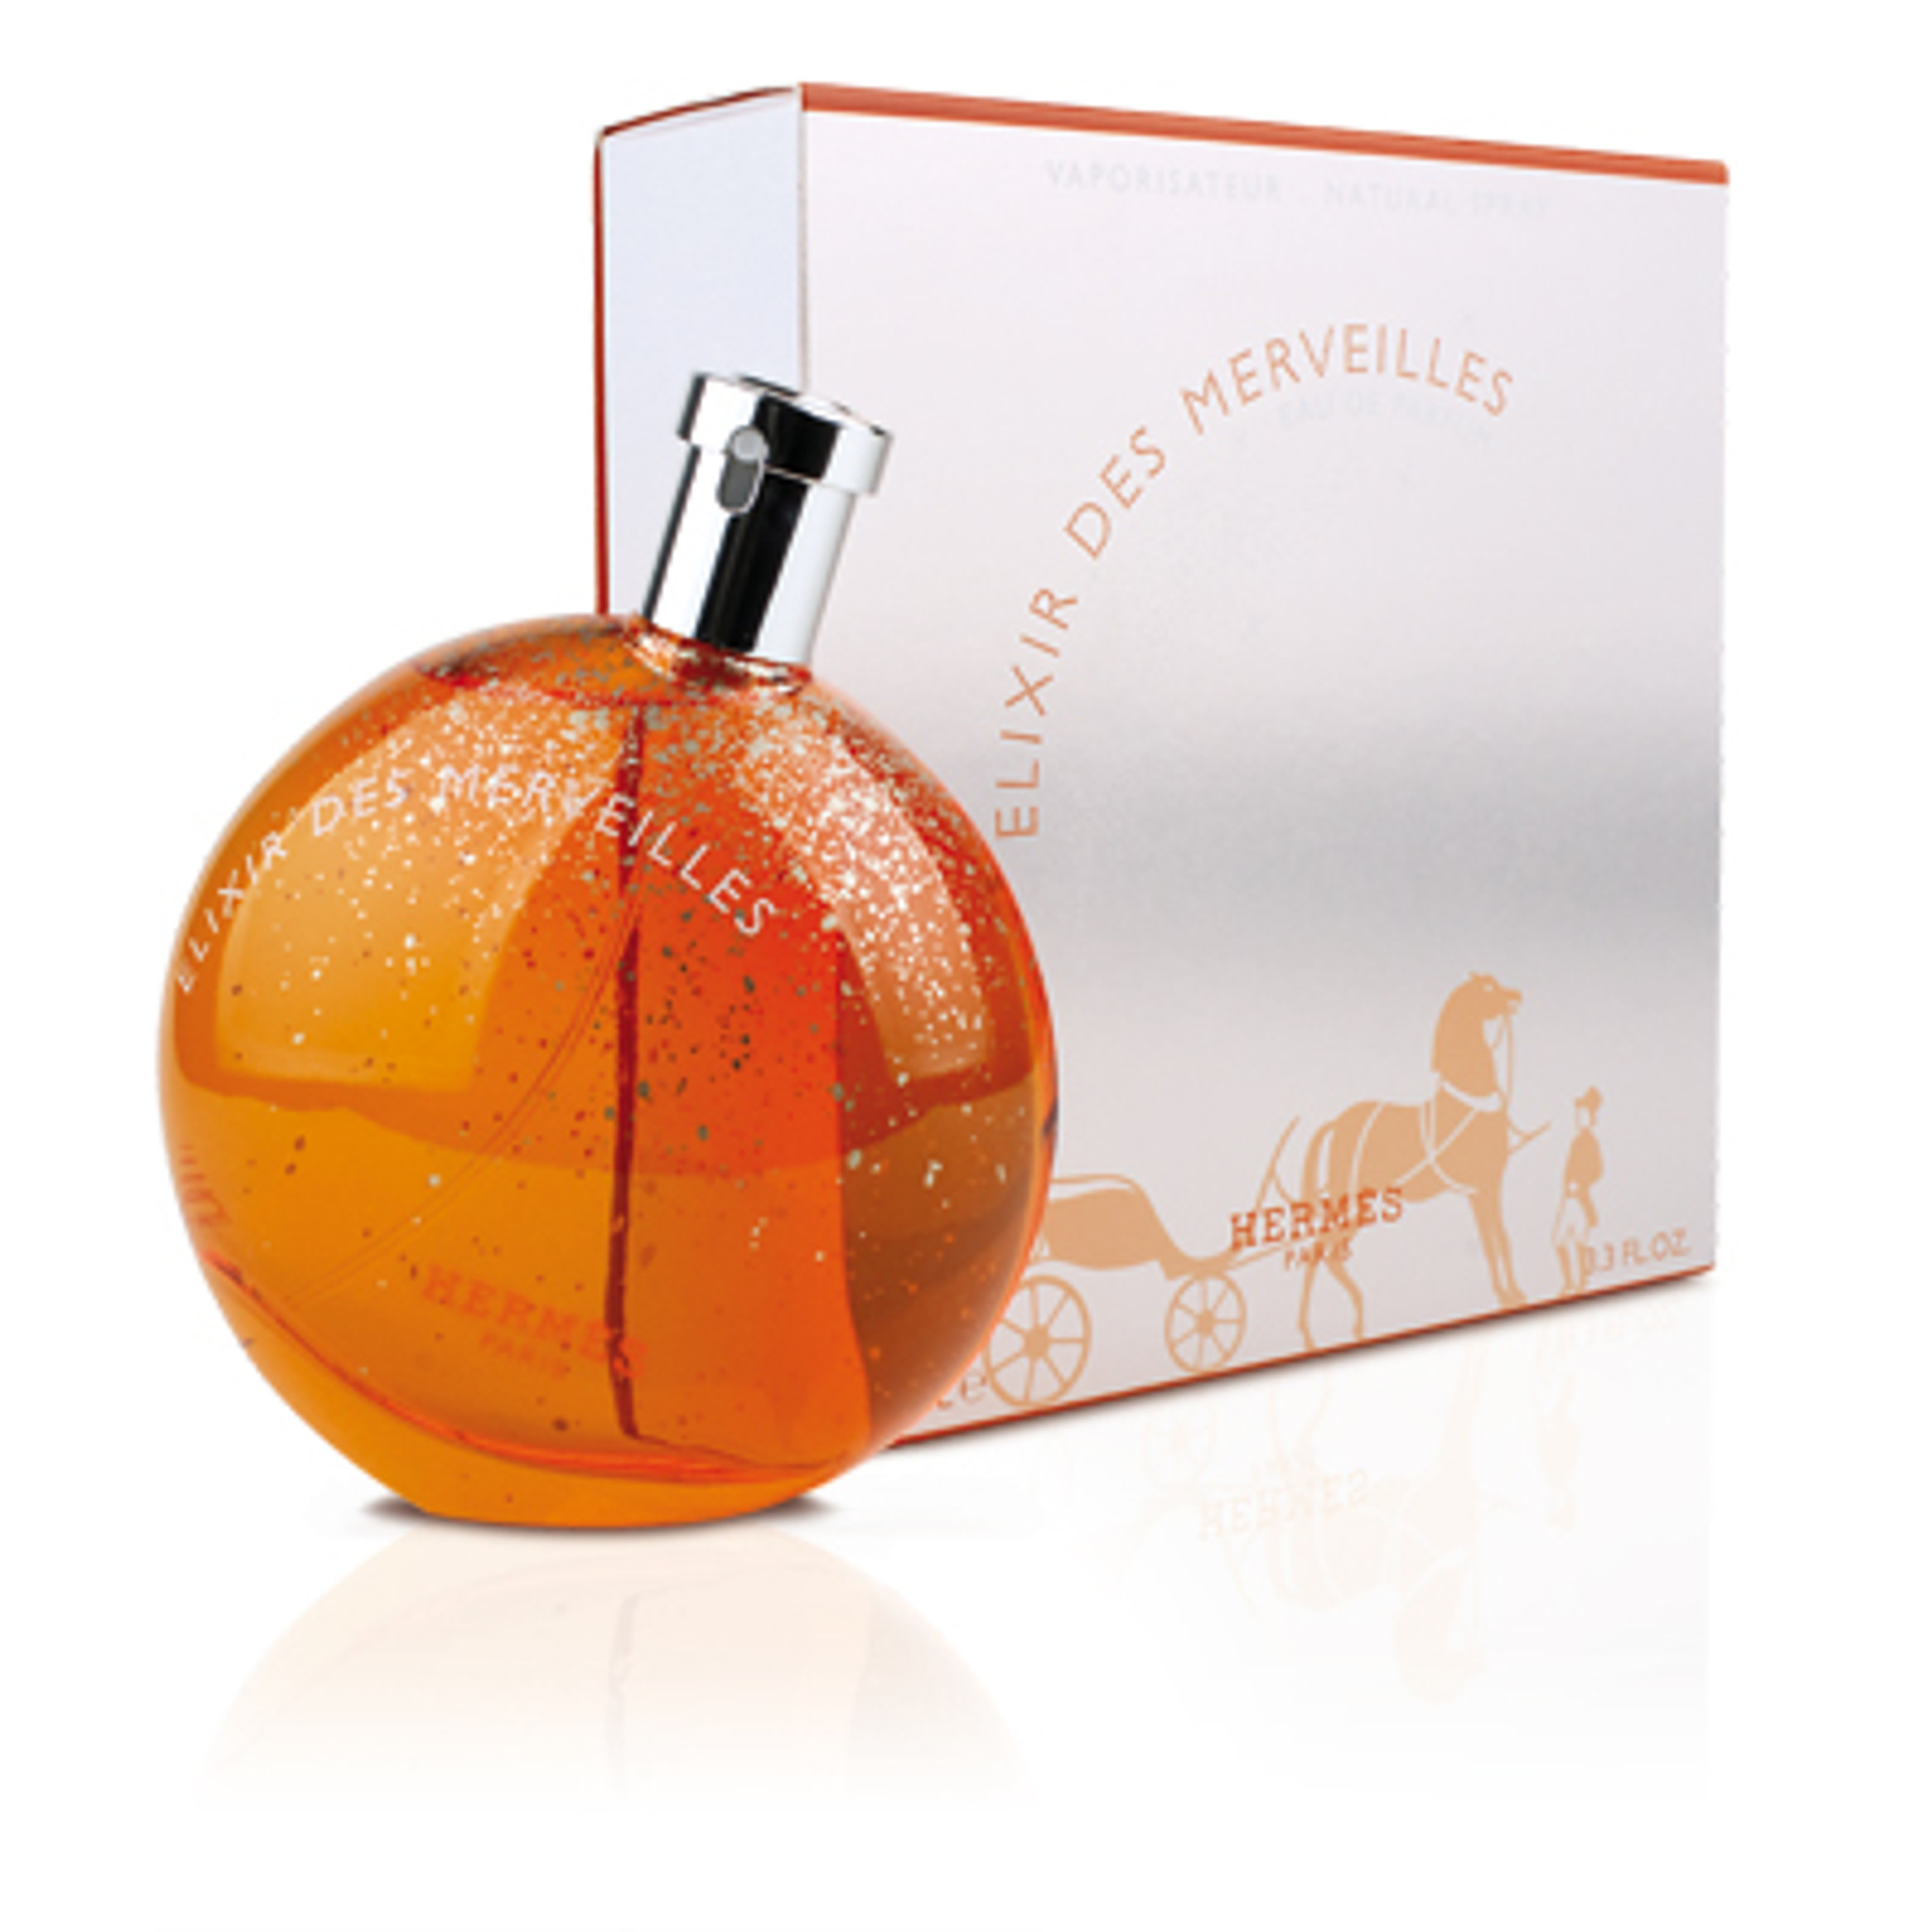 Hermes Elixir des Merveilles Perfume 1.6 oz Edp Spray - HottPerfume.com